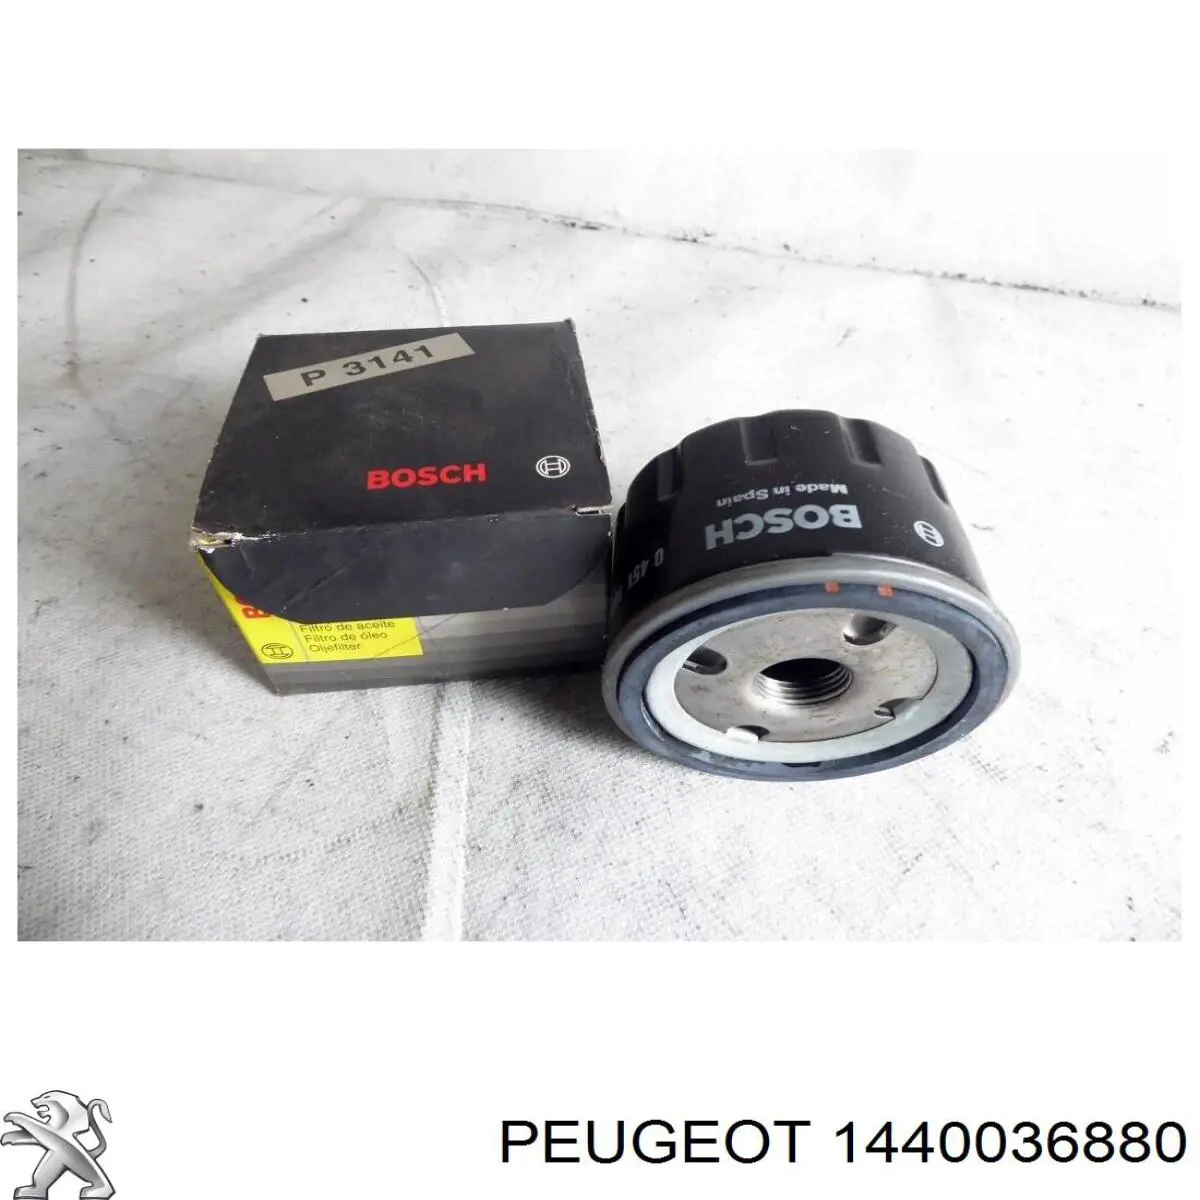 1440036880 Peugeot/Citroen gancho de remolque